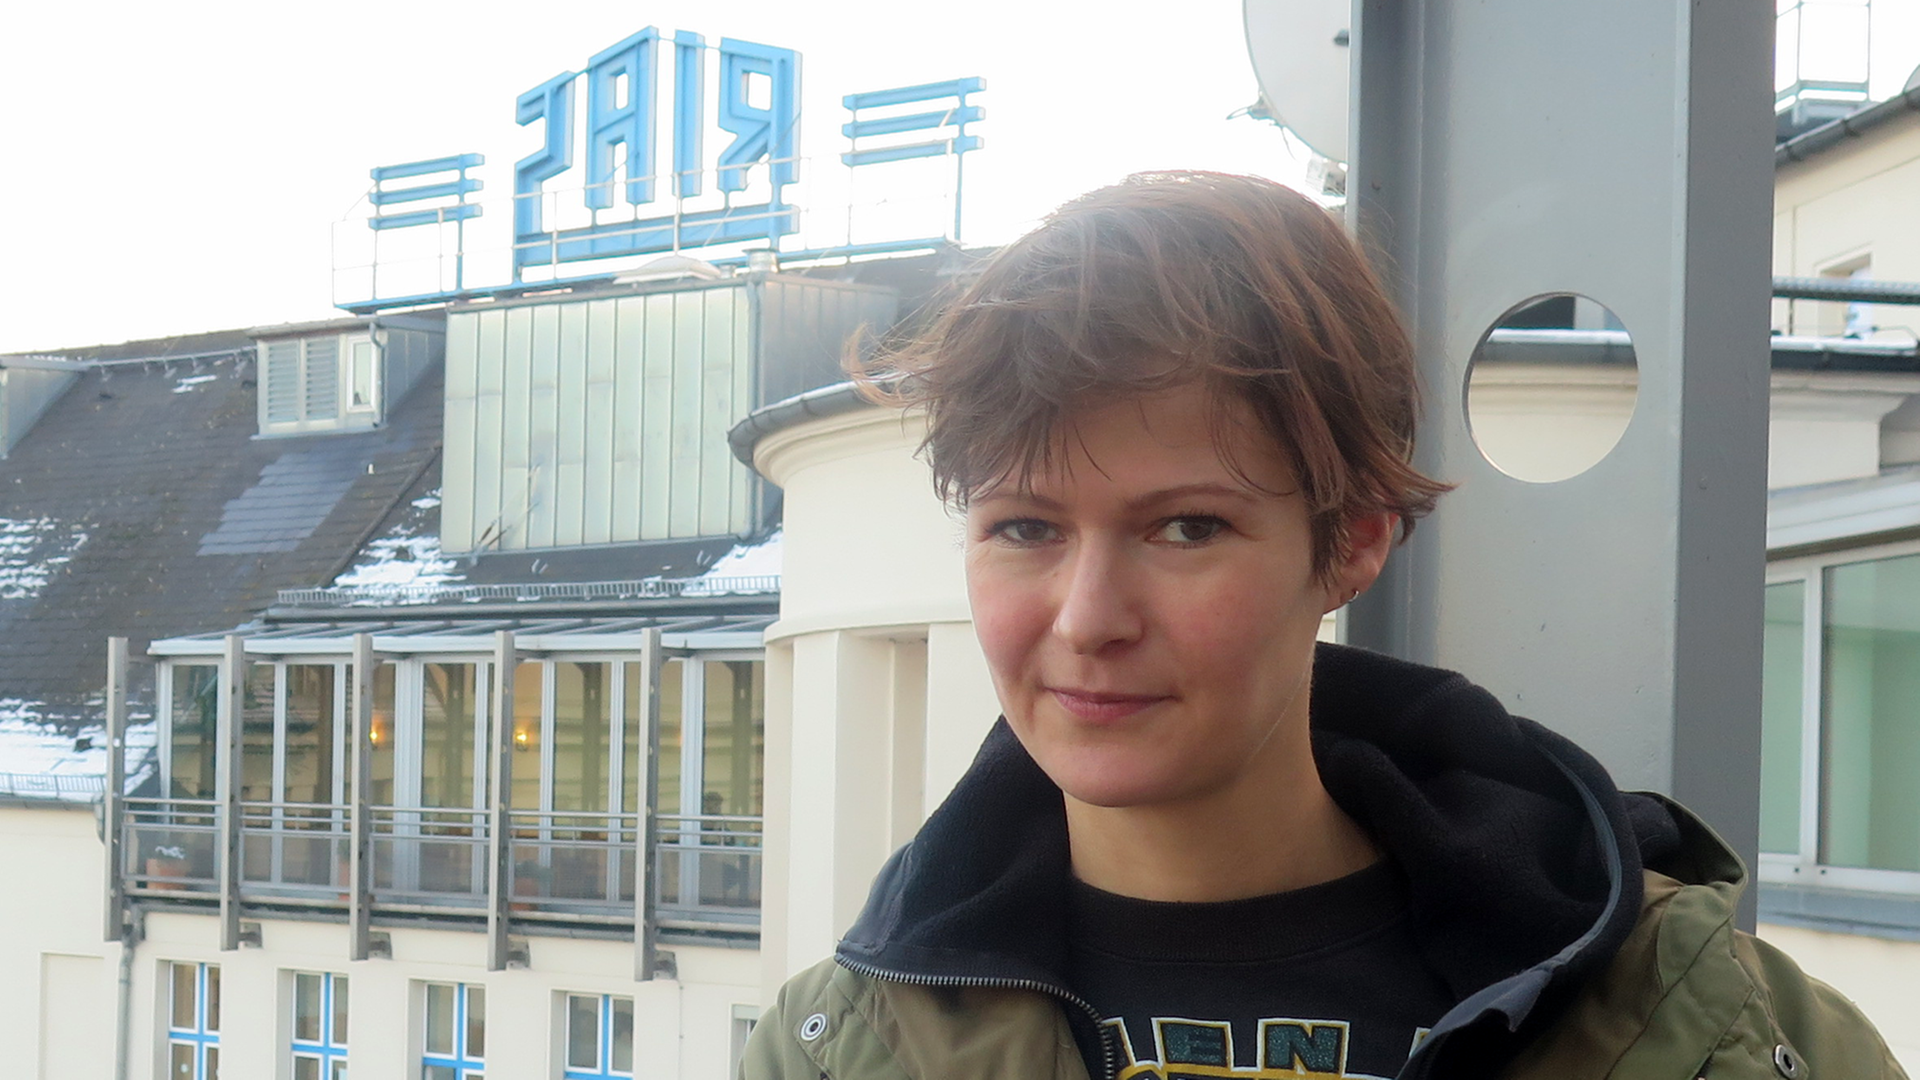 Porträtfoto der norwegischen Musikerin Hanne Kolstø, im Hintergrund ist das Gebäude von Deutschlandradio Kultur mit dem Schriftzug "Rias" auf dem Dach zu sehen